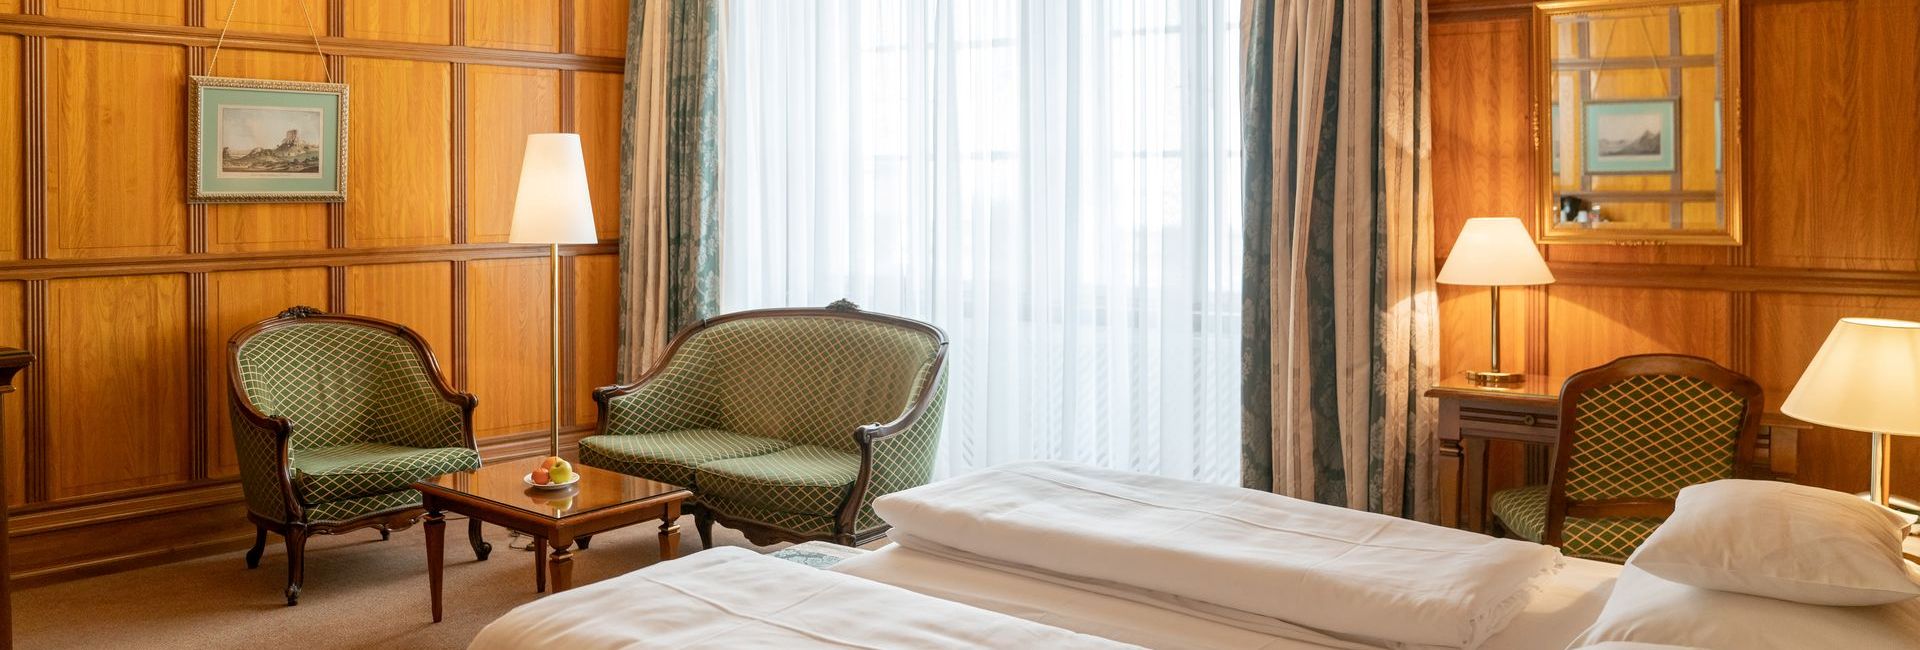 Double room with wood panelling at Hotel König von Ungarn in Vienna